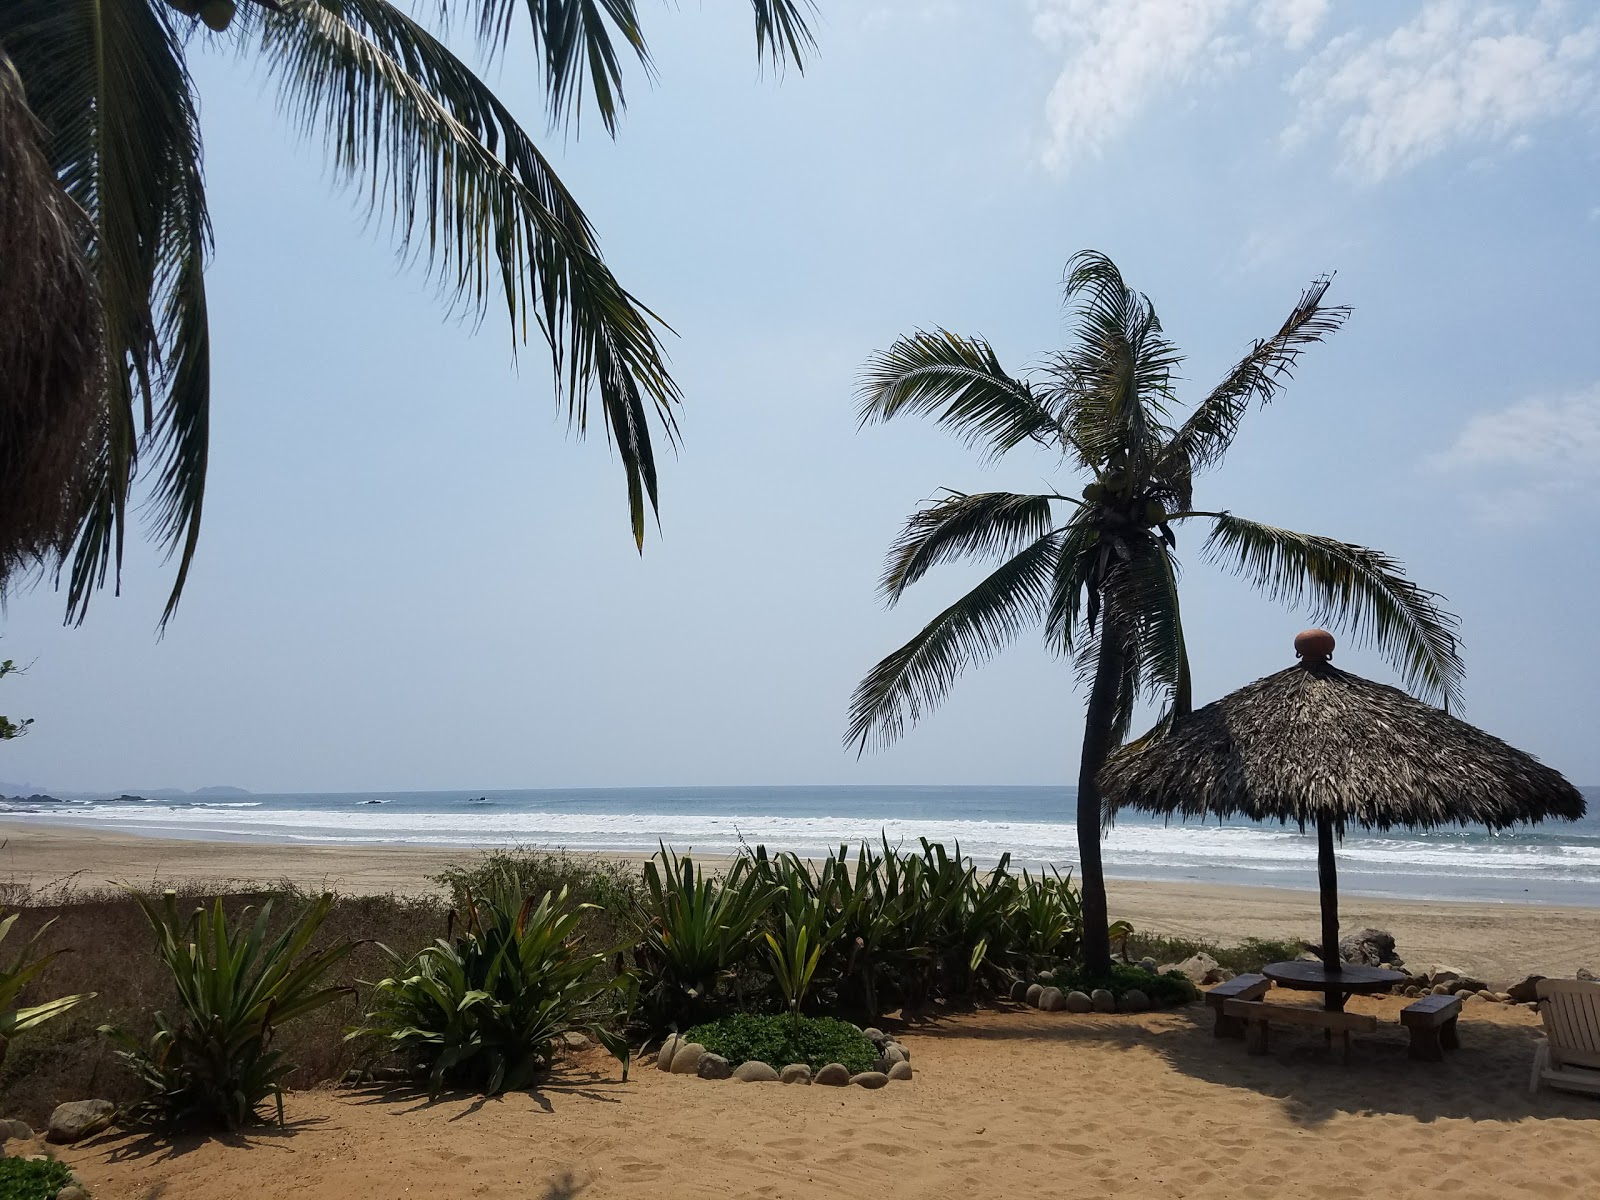 Zdjęcie Playa Troncones - popularne miejsce wśród znawców relaksu